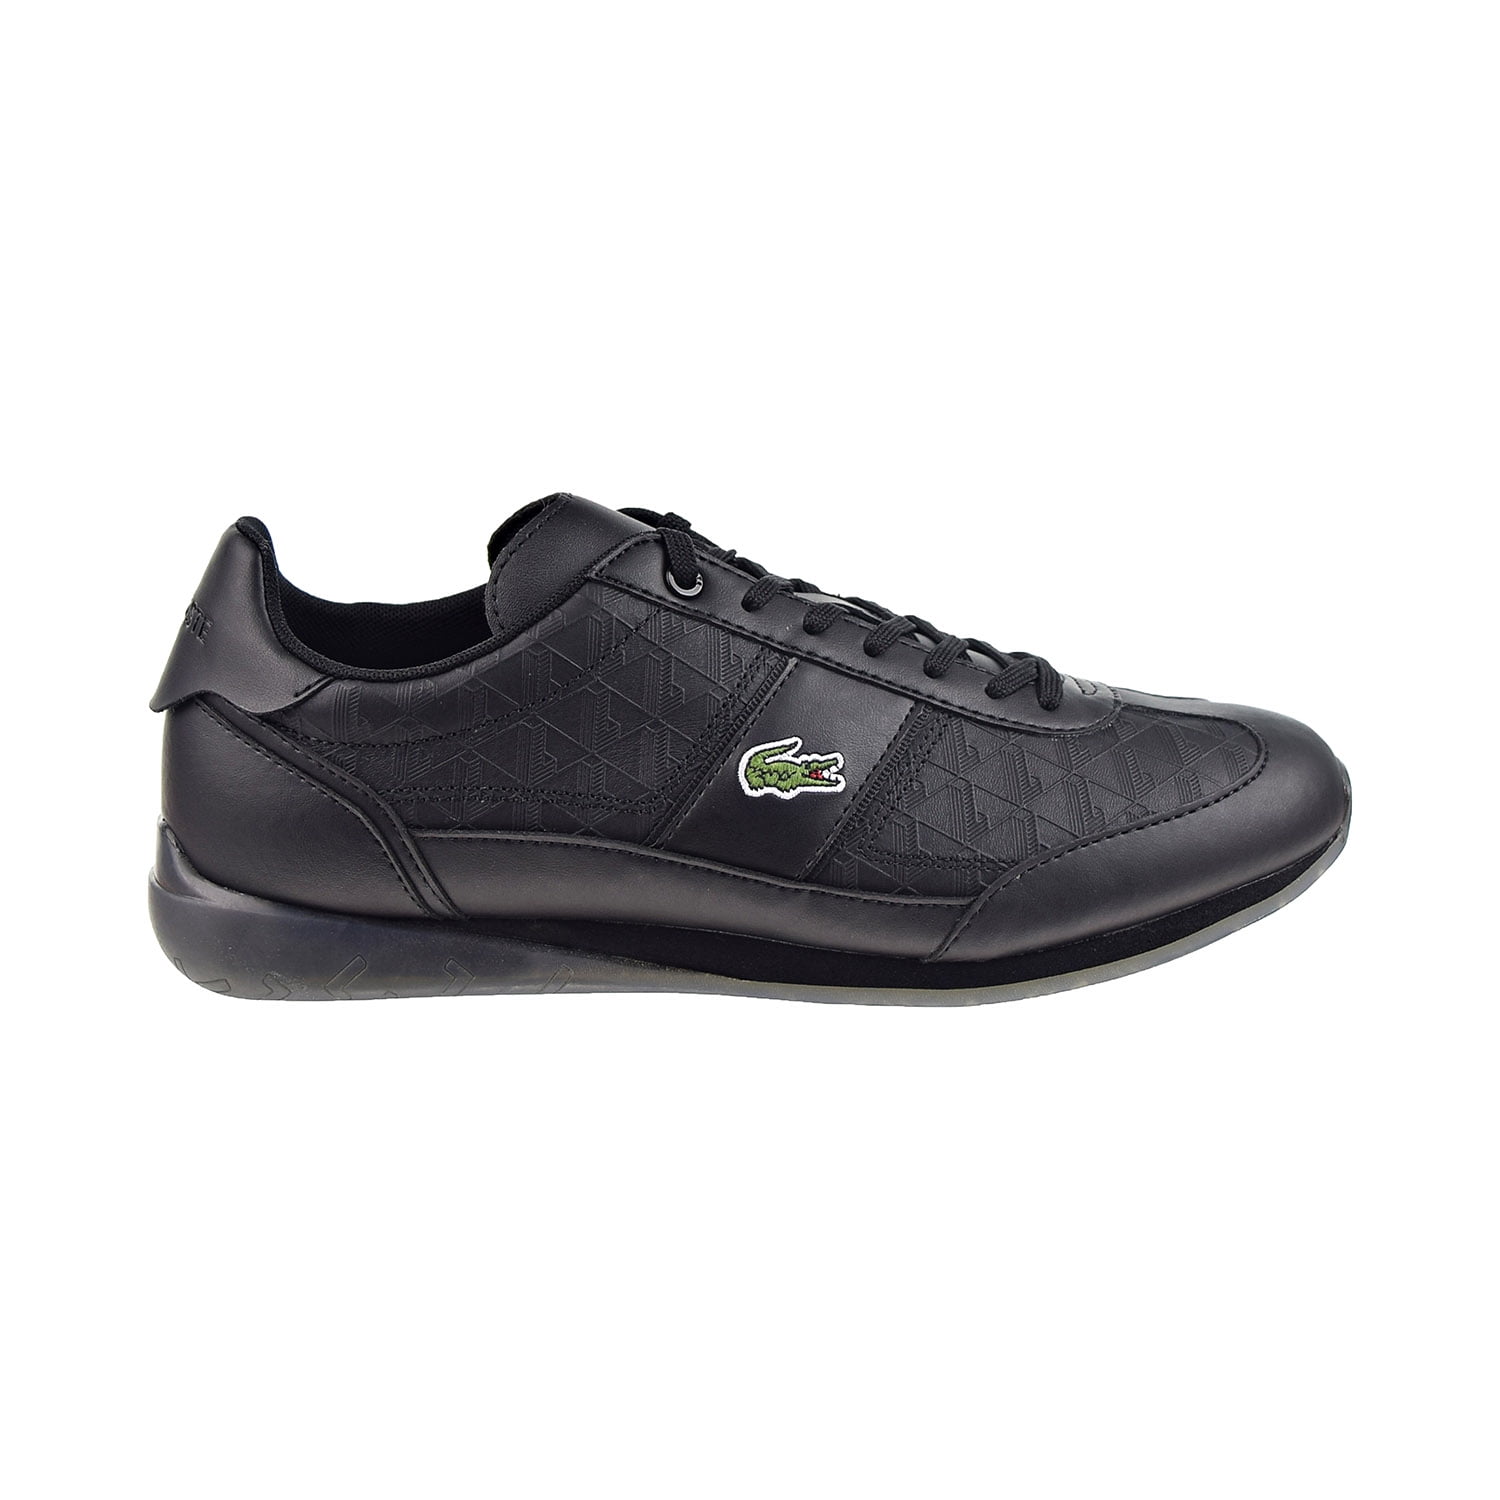 Angular 222 Men's Shoes Black 744cma0035-02h - Walmart.com